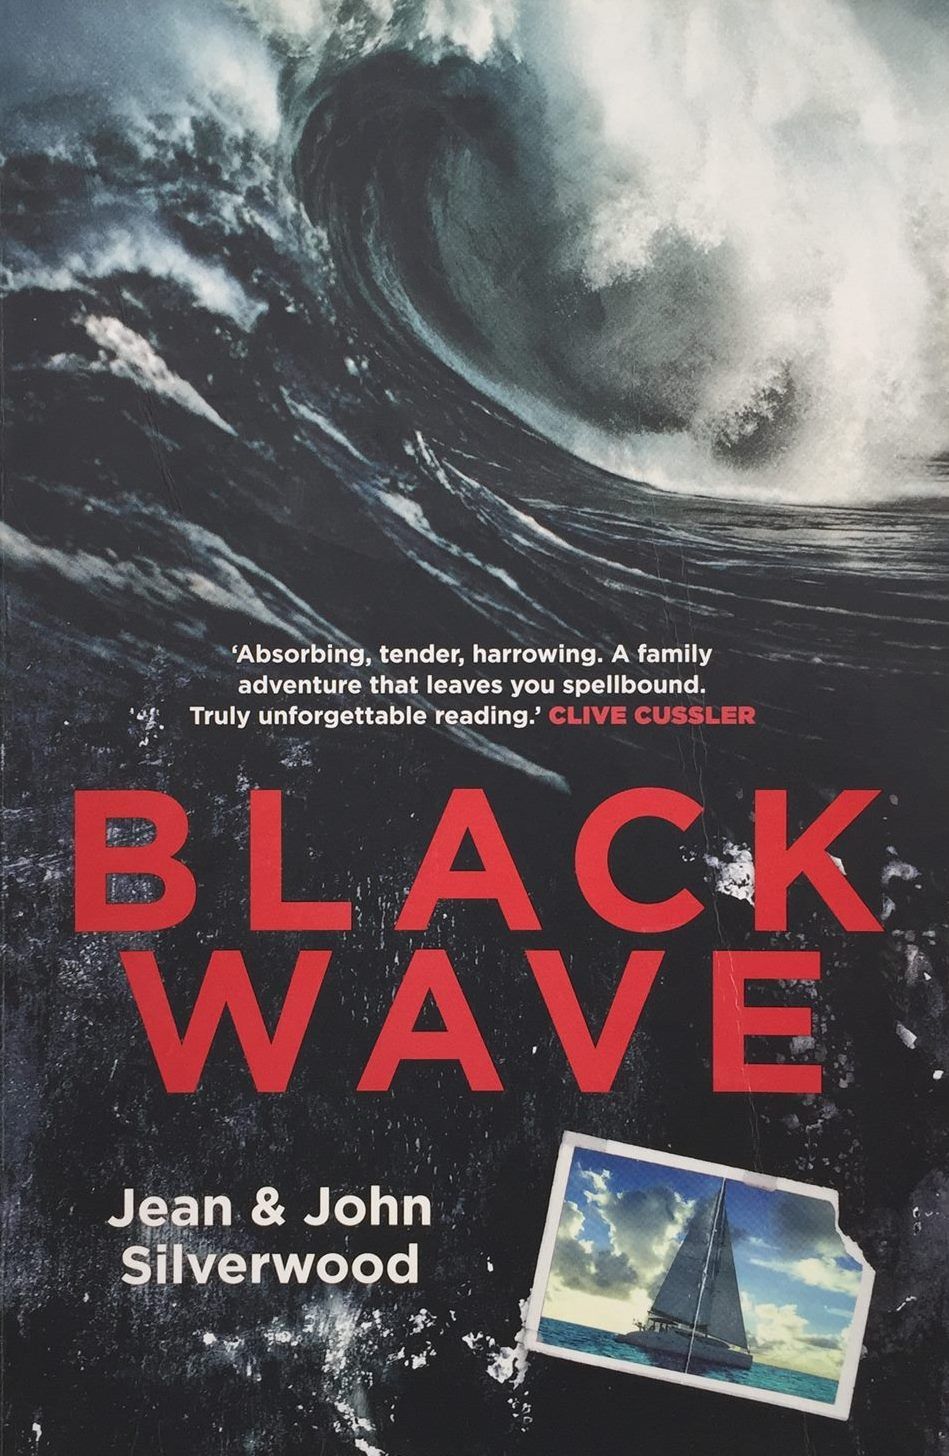 BLACK WAVE